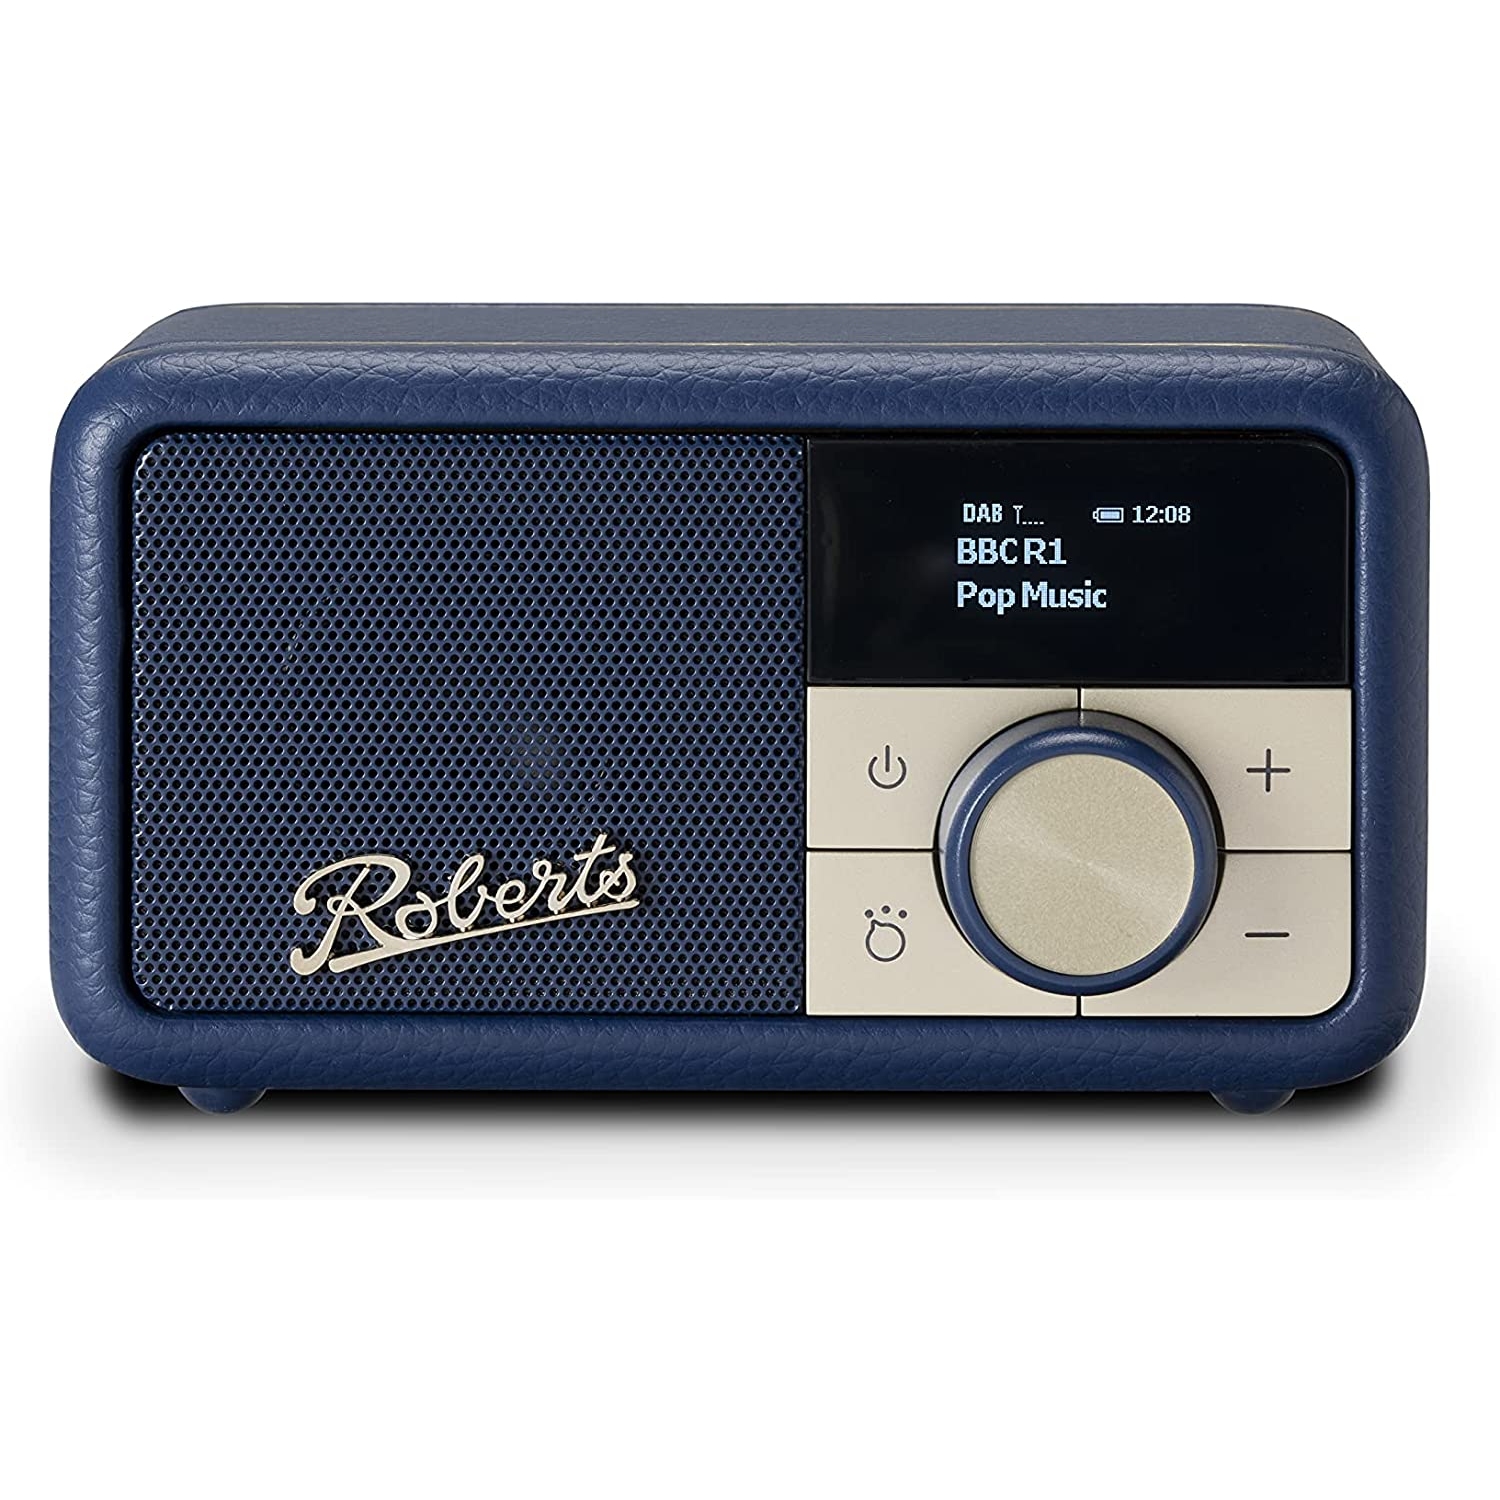 RADIO1: DAB Radio  Sleek Design with DAB+, FM & OLED Display